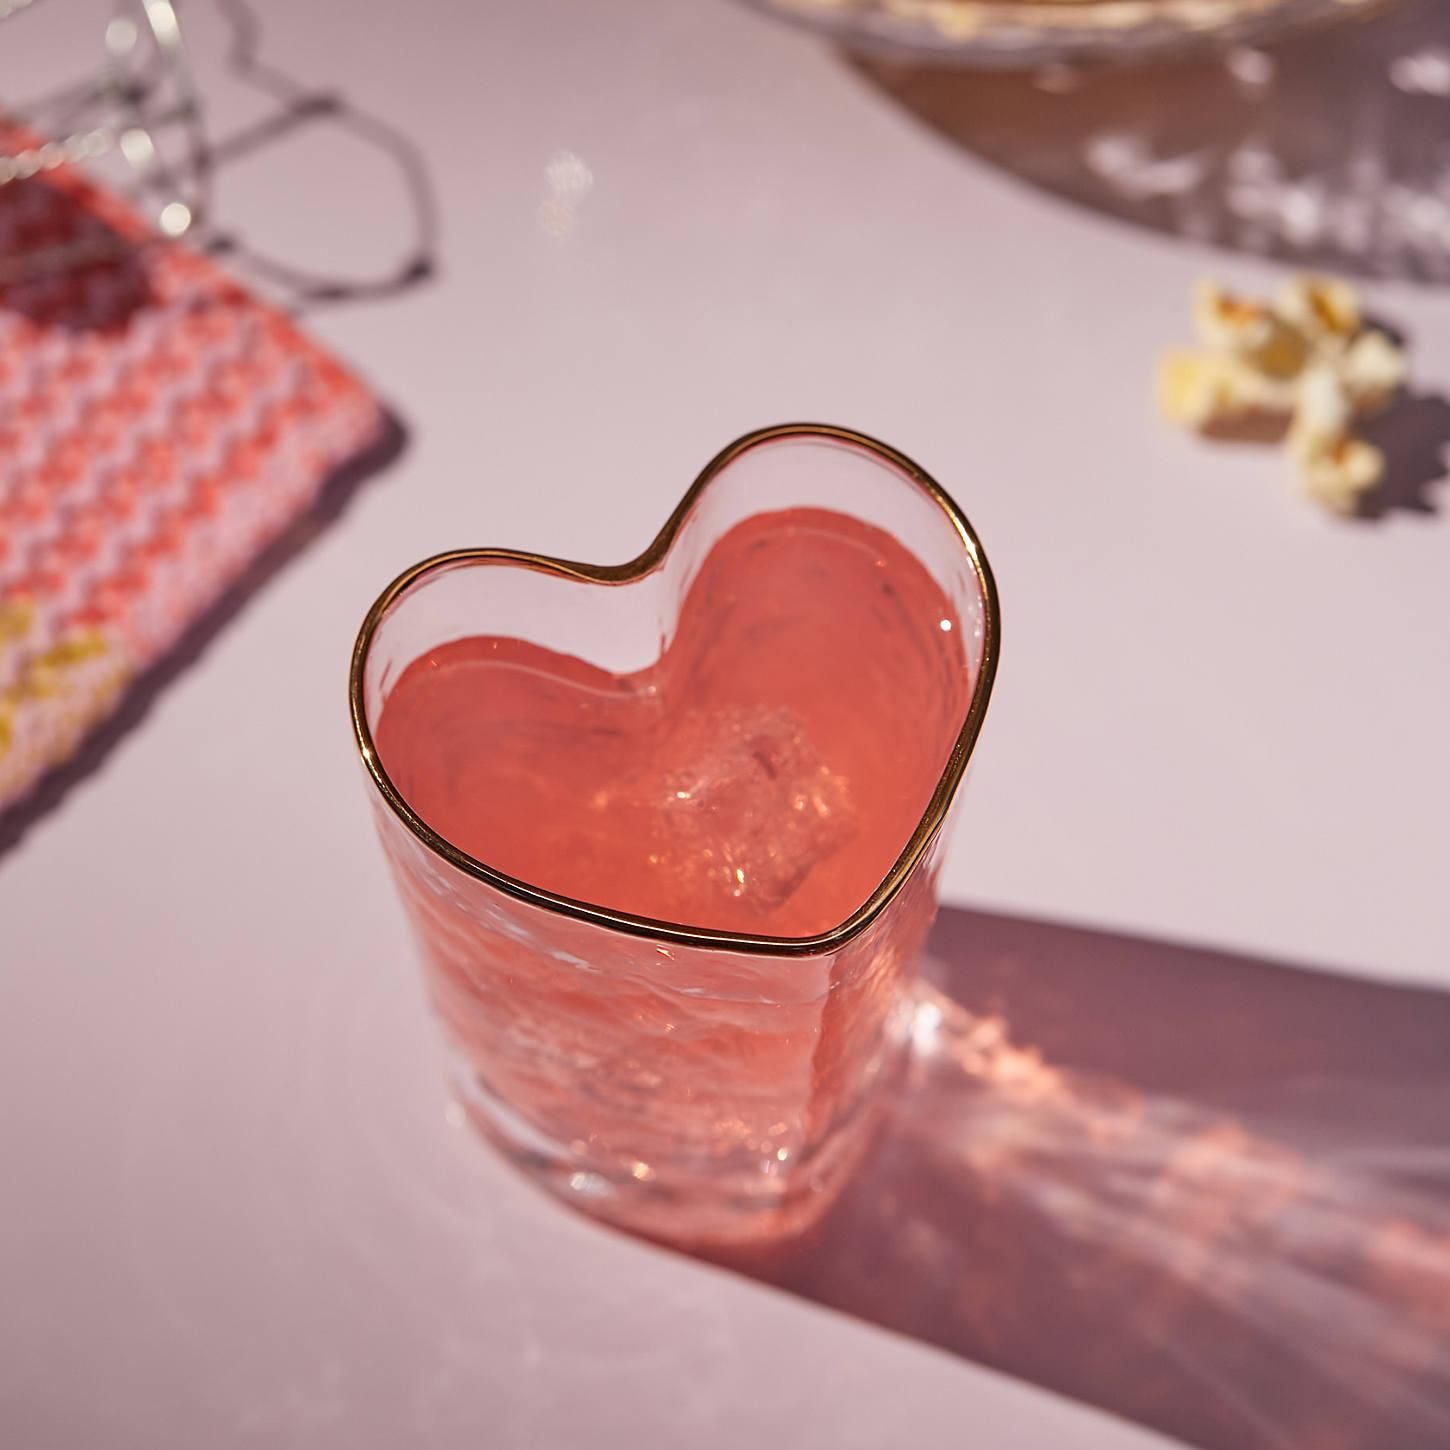 Heart Shaped Juice Glass